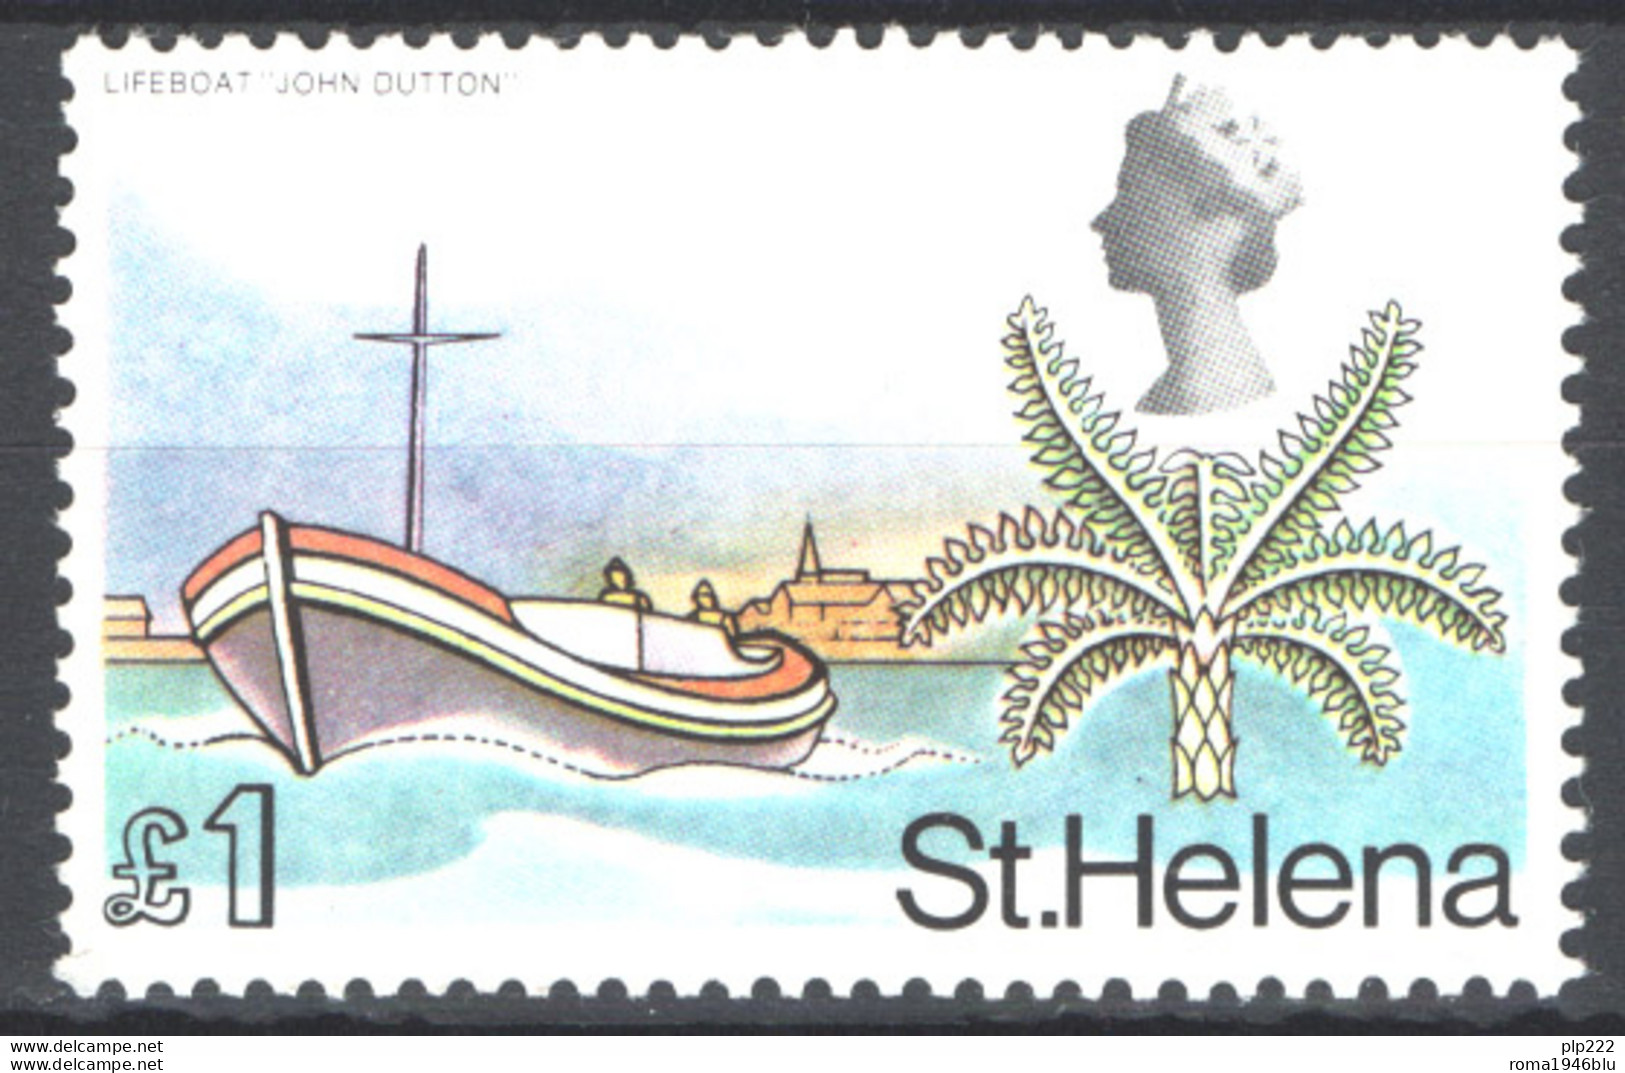 St.Helena 1968 Y.T.209a **/MNH VF - Sainte-Hélène